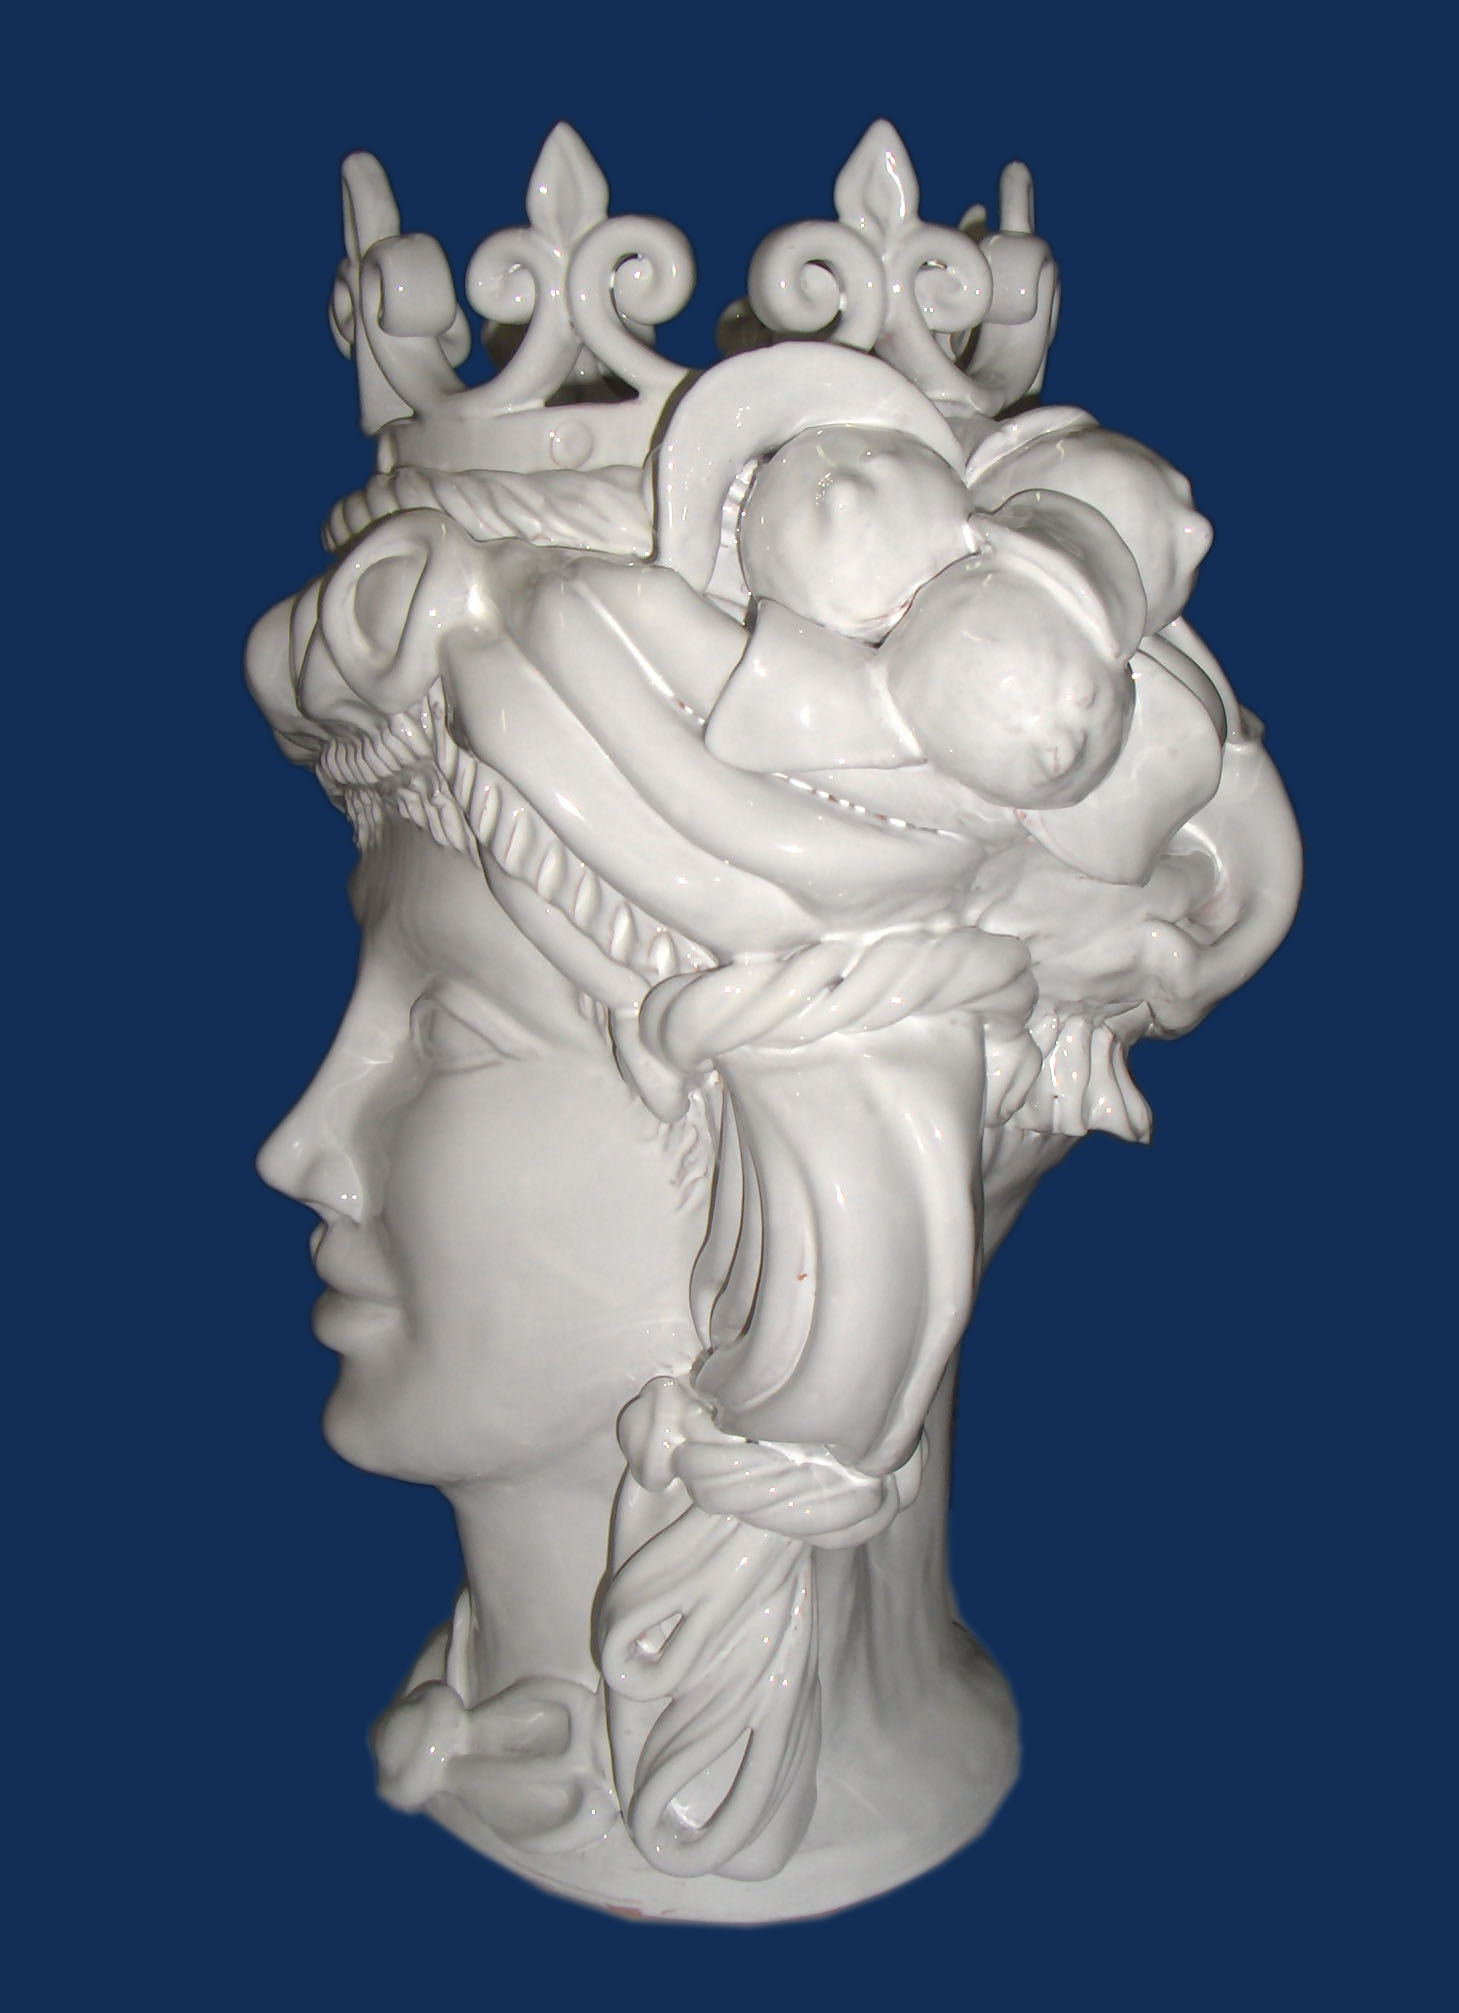 Testa di moro versione femmina, di colore bianco lucido, altezza 35 cm, vista di profilo